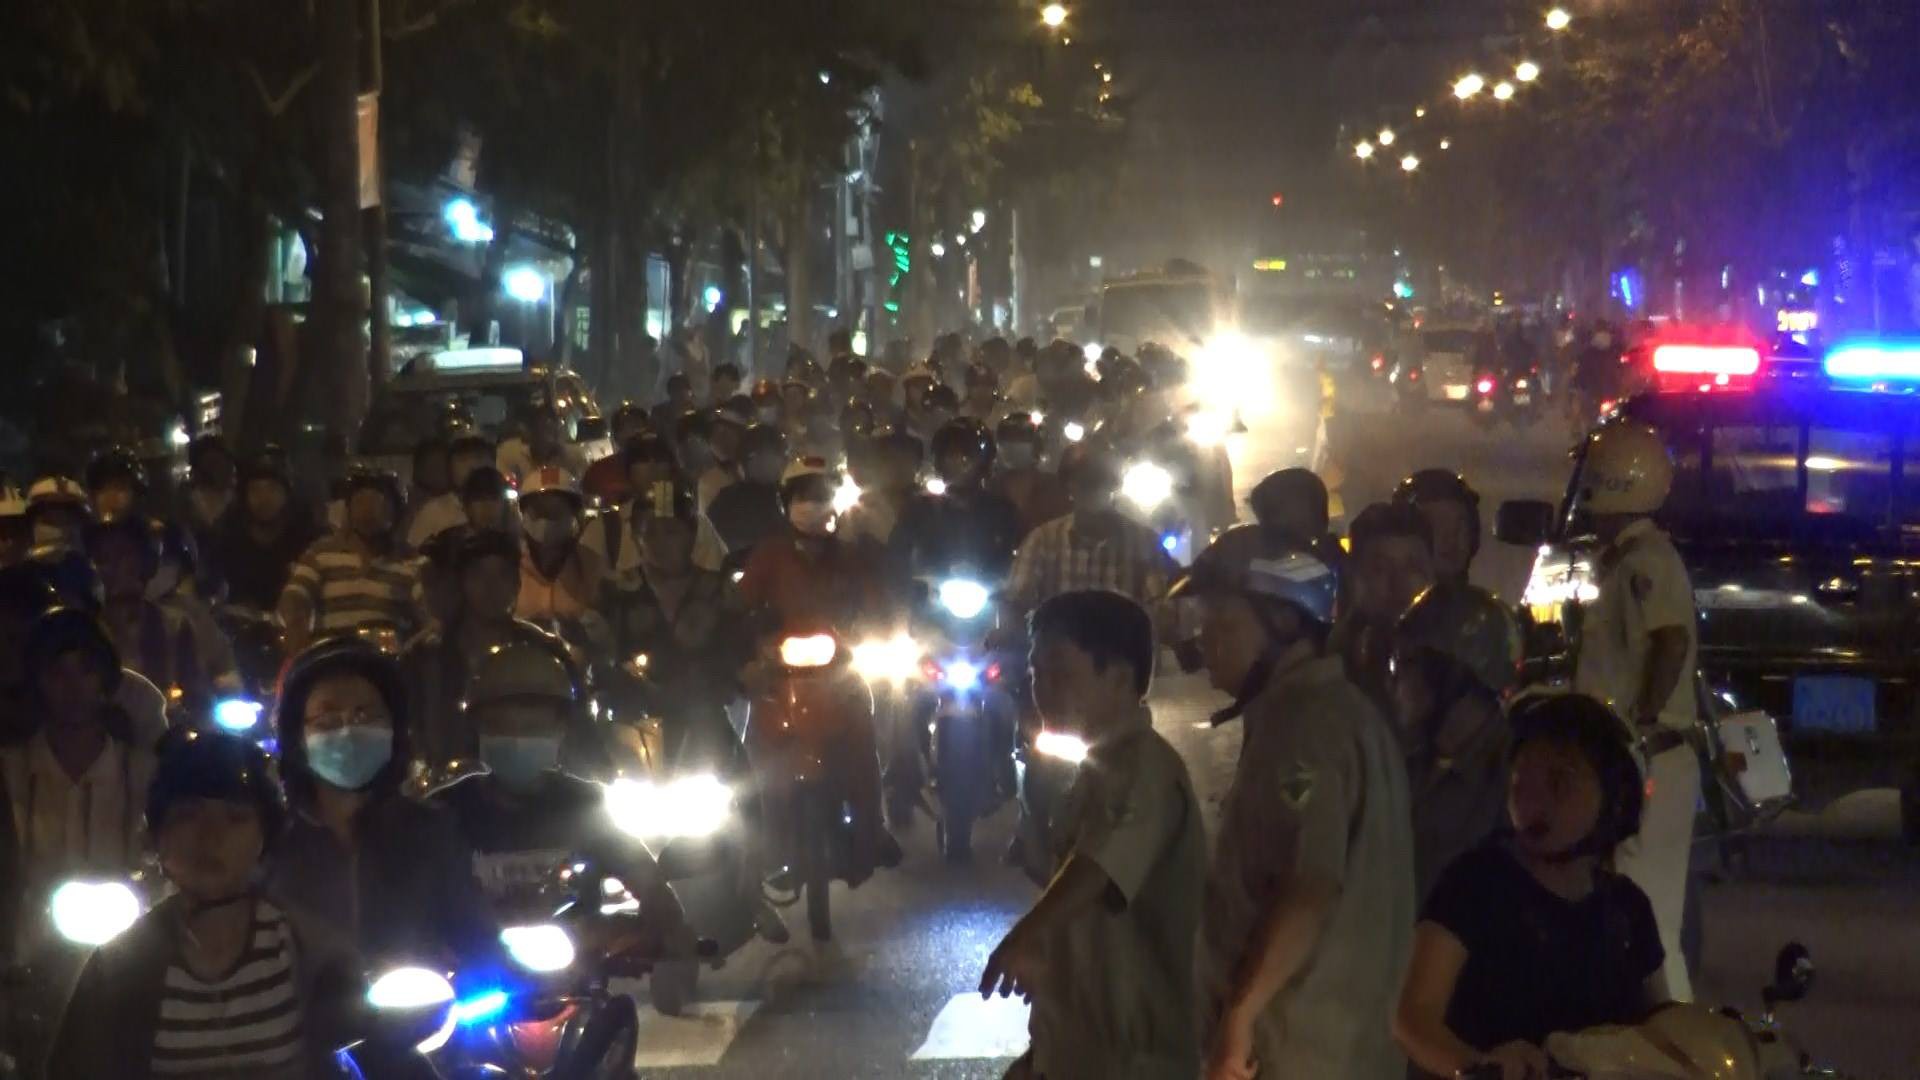 Nguyên nhân vụ cây xăng bốc cháy dữ dội kèm tiếng nổ lớn khiến nhiều người hoảng loạn bỏ chạy thoát thân ở Sài Gòn - Ảnh 3